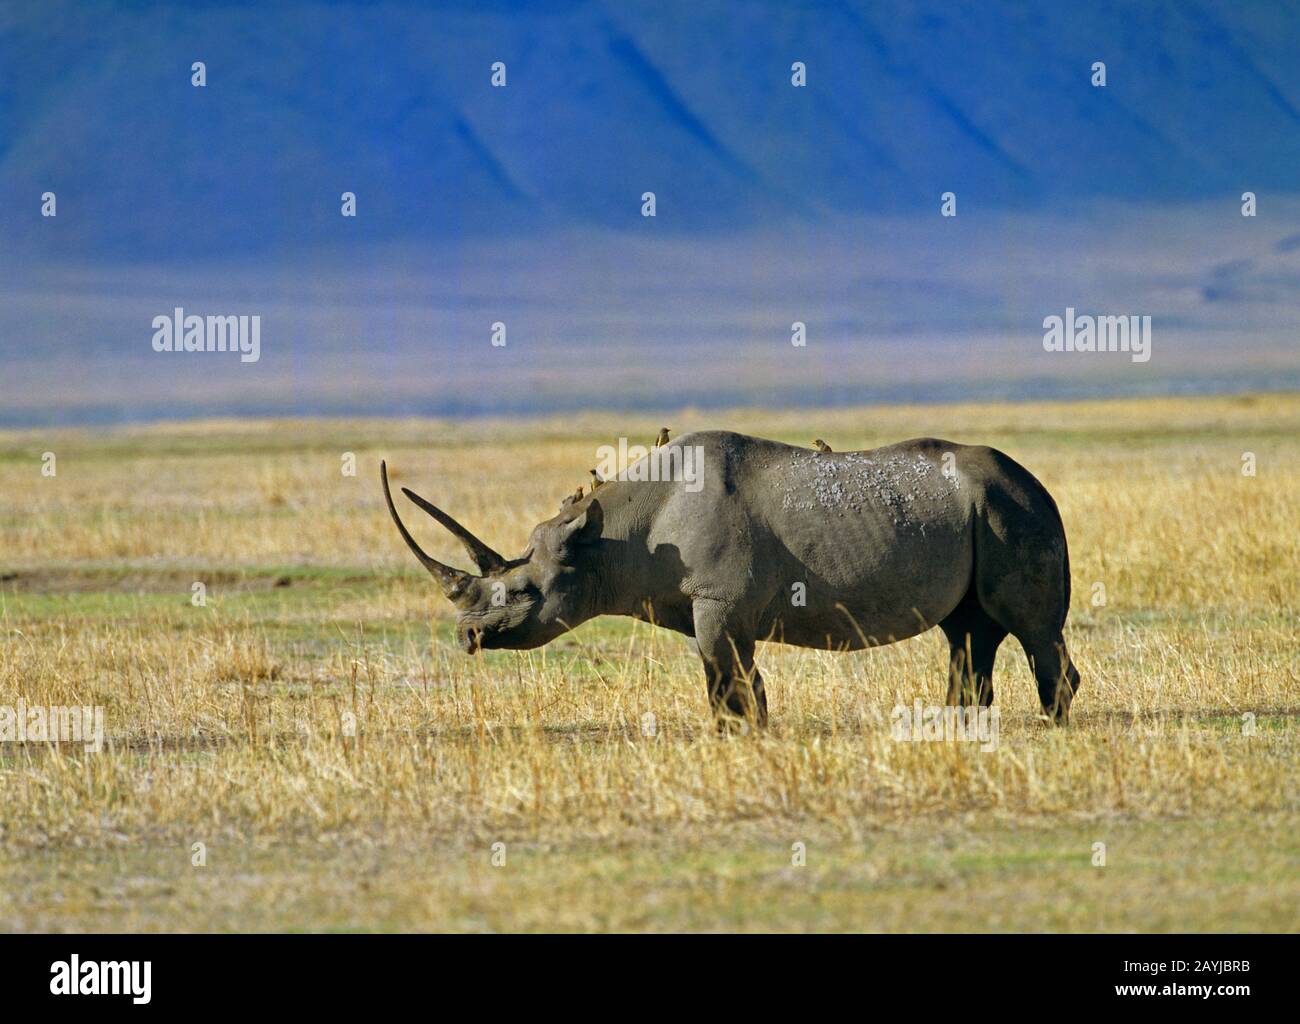 Rinocerontes negros, rinocerontes enganchados, hojear rinocerontes (Diceros bicornis), de pie en la sabana, vista lateral, África Foto de stock